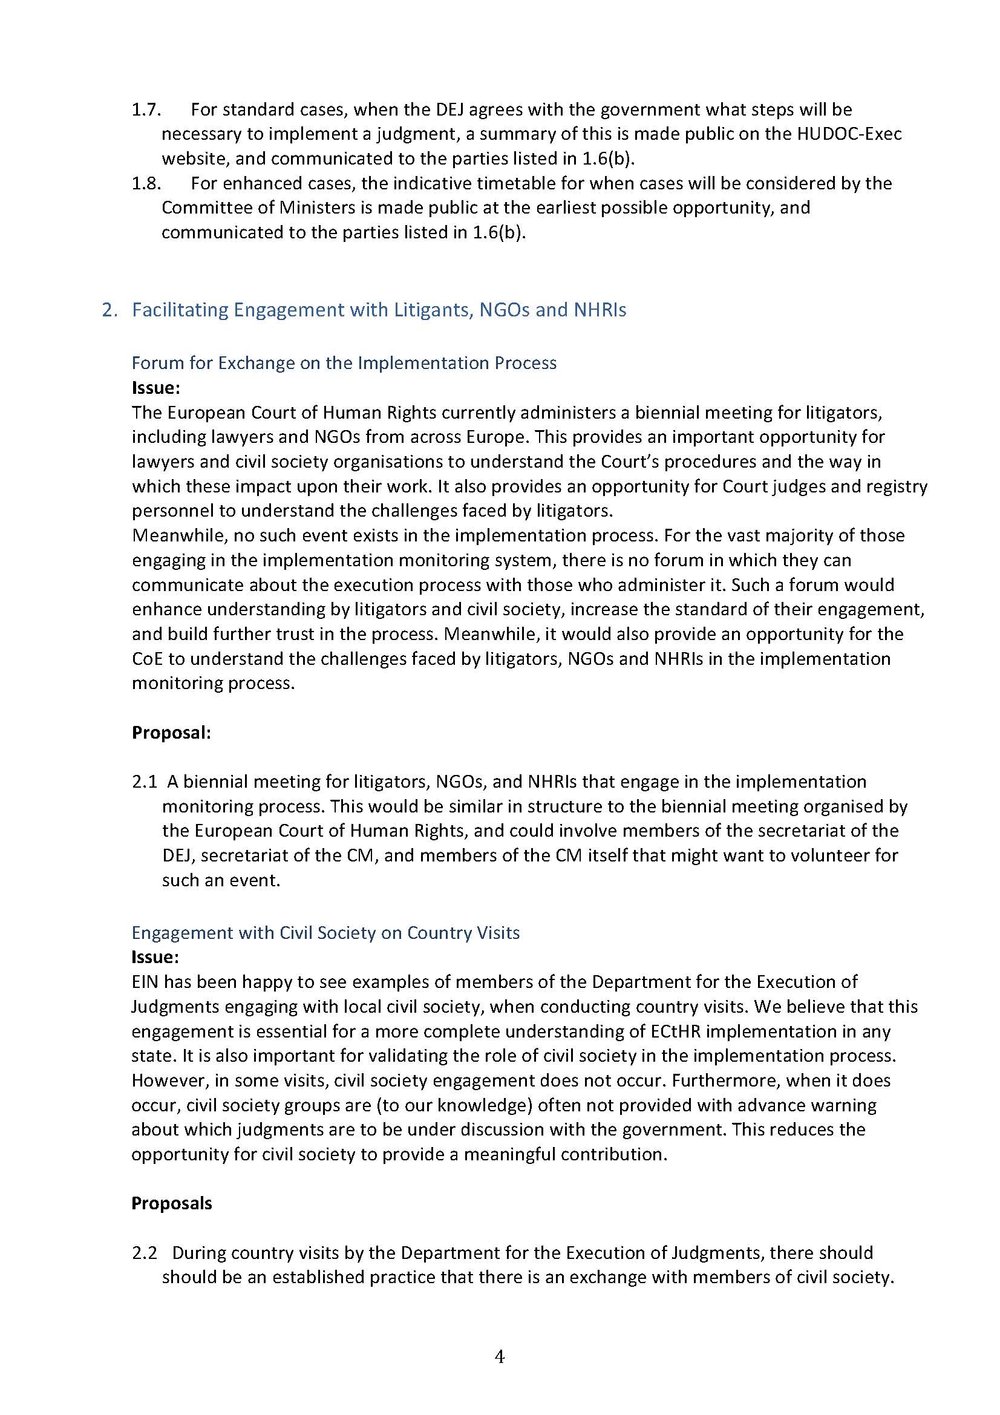 EIN Proposals Document_Page_4.jpg